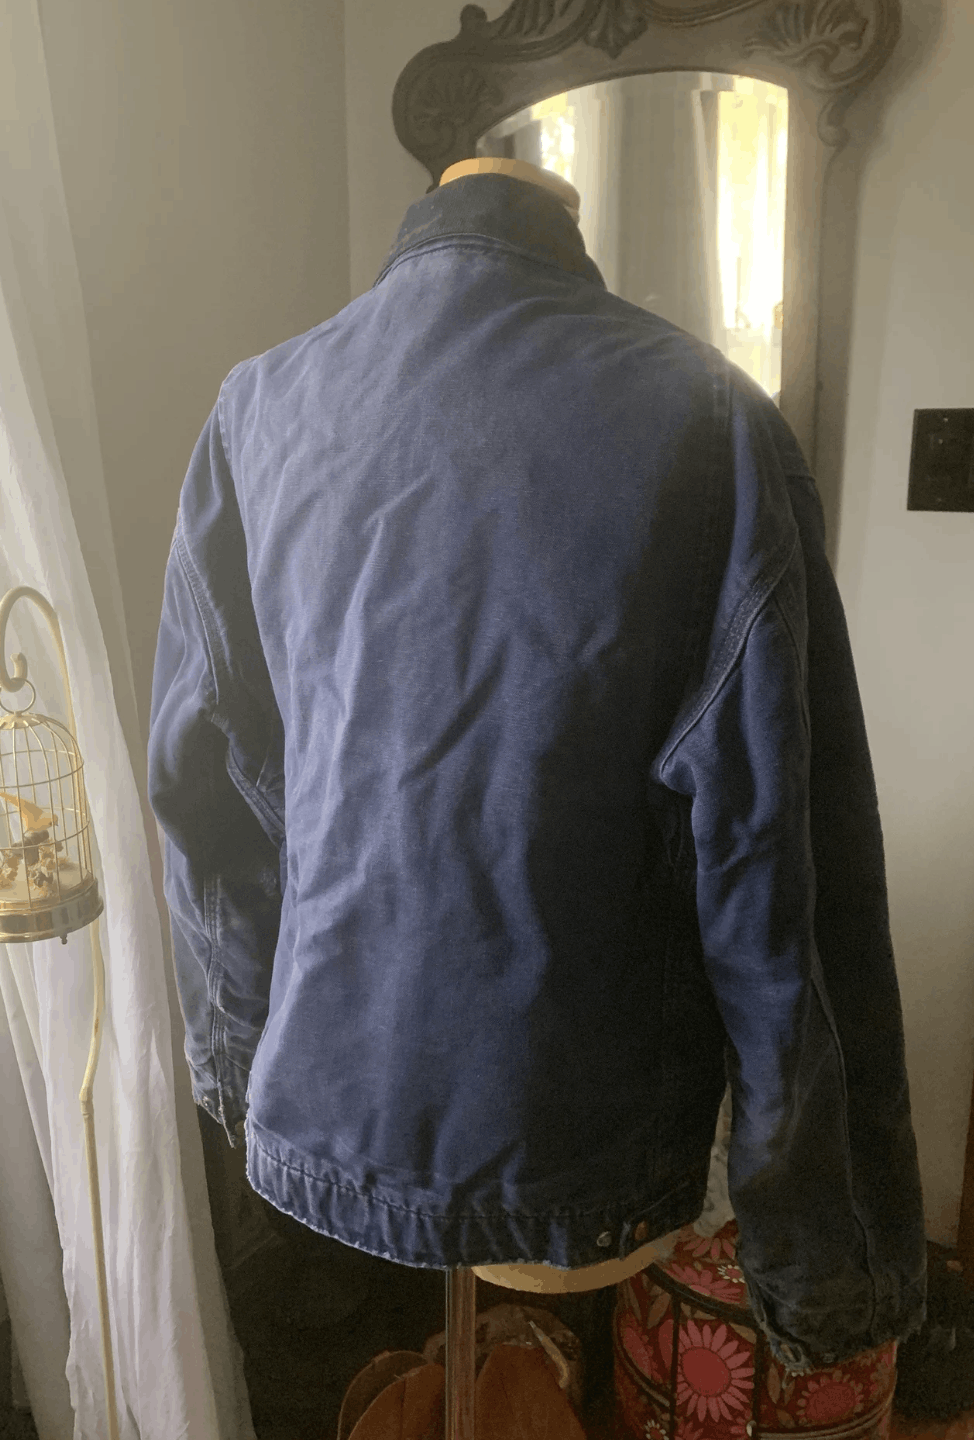 Carhartt Vintage Carhartt Detroit Jacket Faded Blue Size US M / EU 48-50 / 2 - 5 Thumbnail